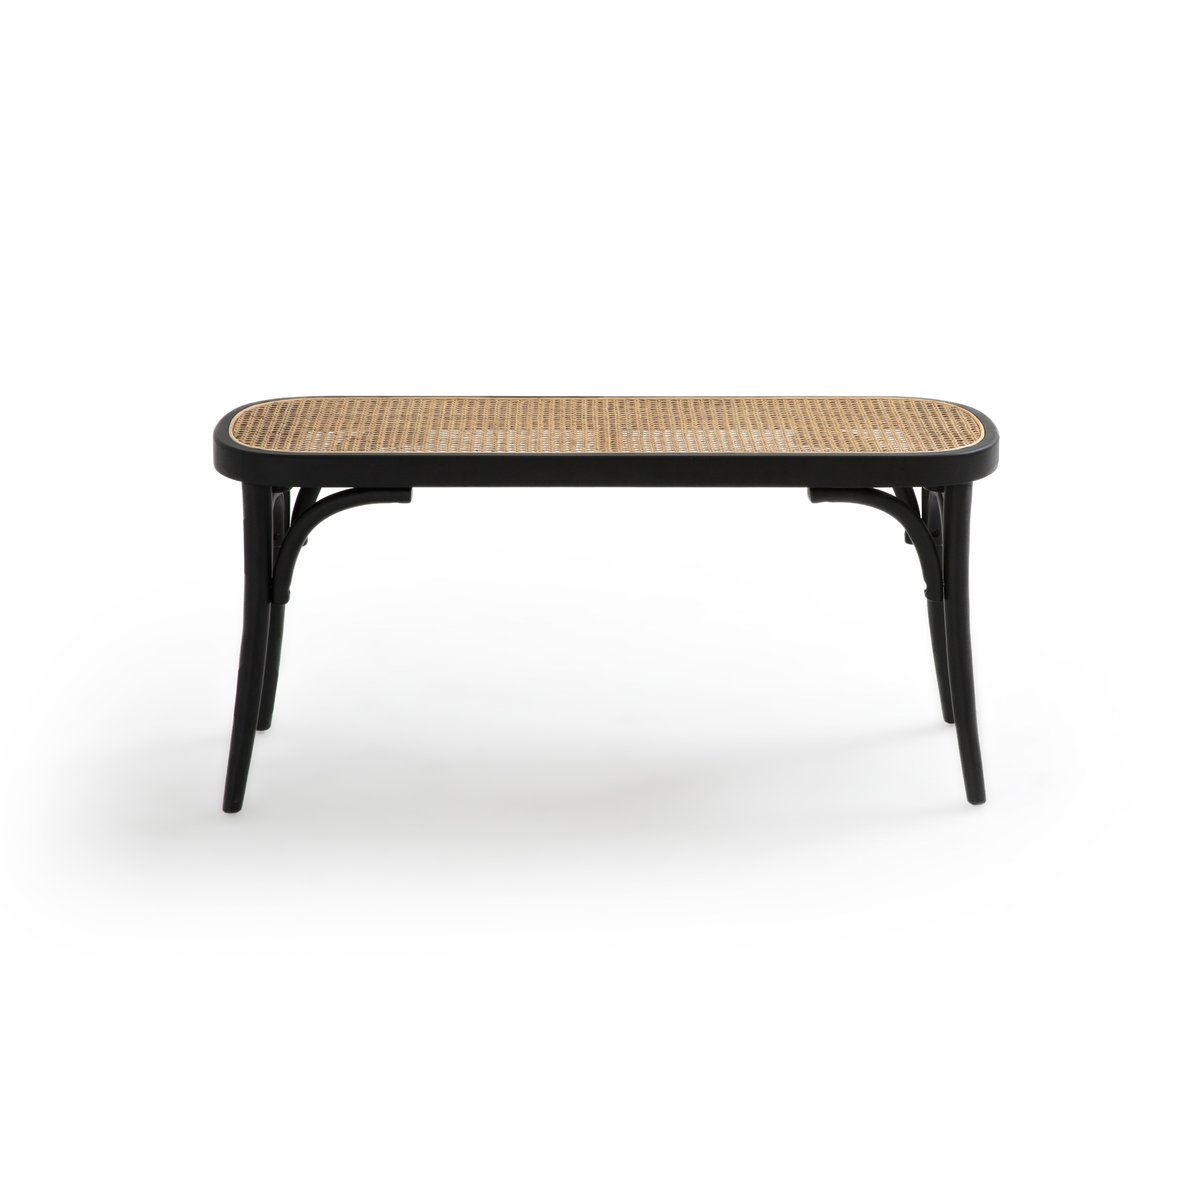 Скамья La Redoute Прикроватный столик Cedak единый размер черный - фото 2